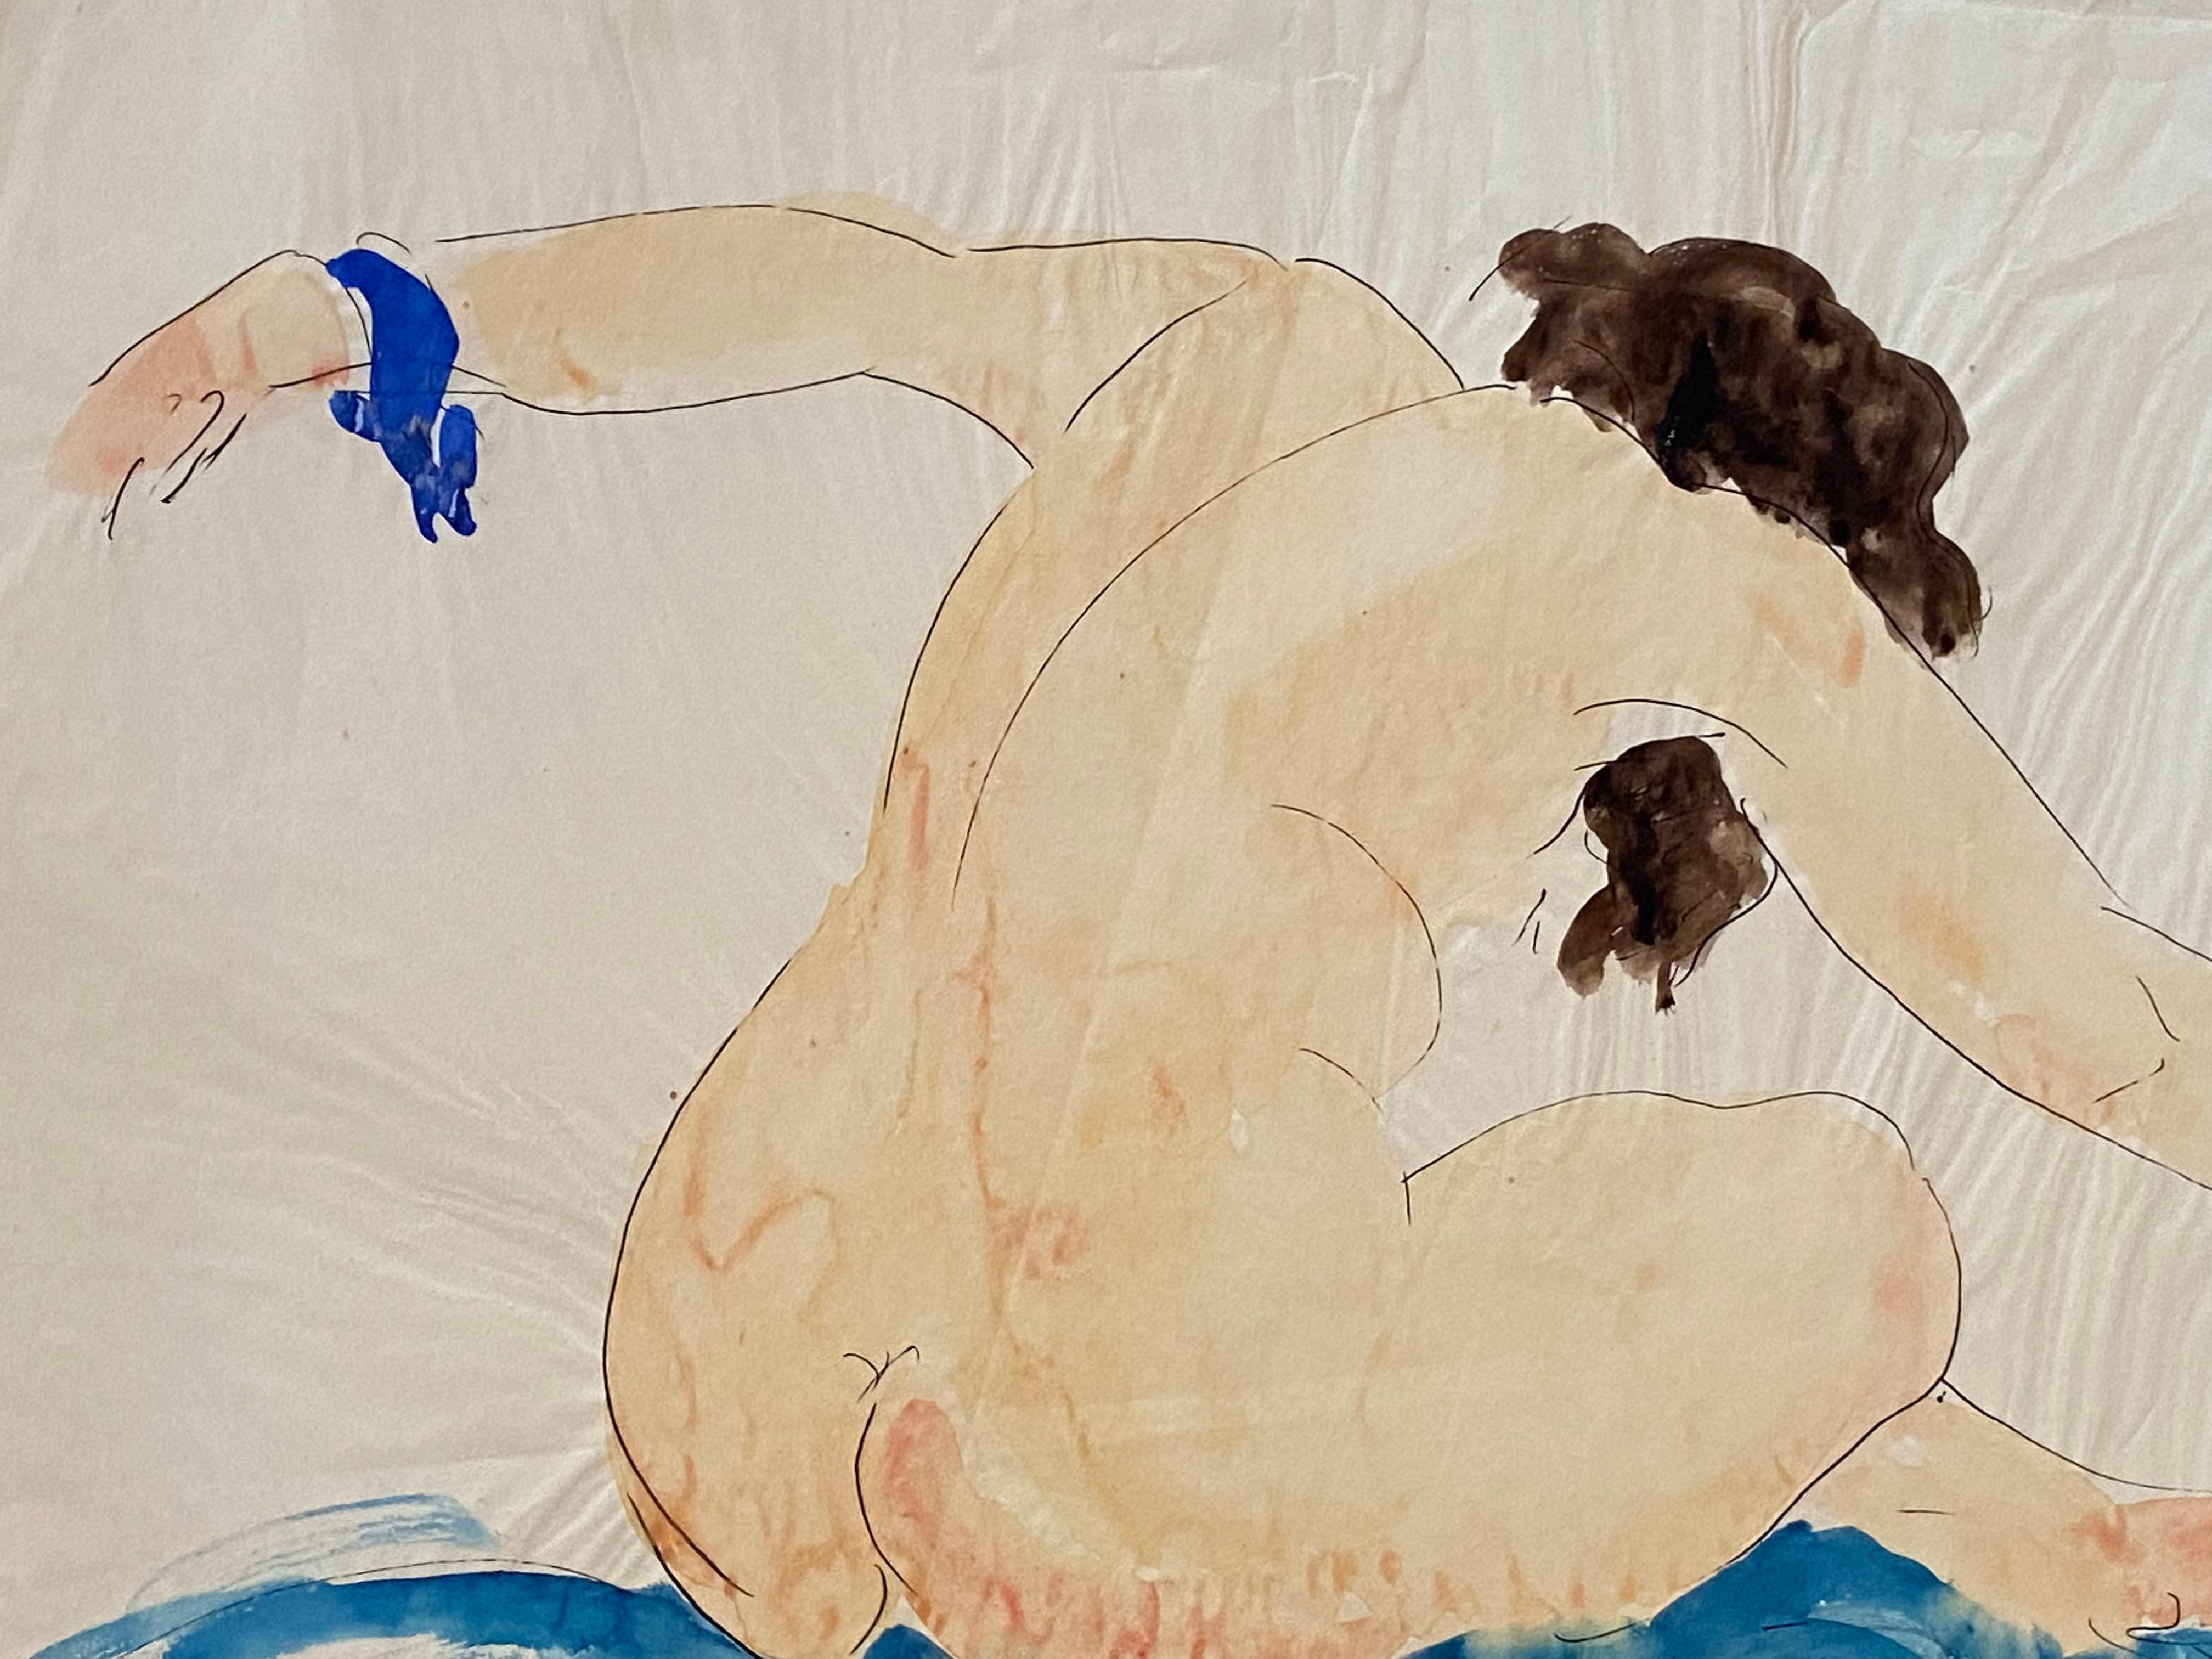 Merveilleuse œuvre d'art en techniques mixtes représentant une femme nue avec des bras en mouvement, réalisée par Samuel Granovsky. Signé et daté 1925, Paris à l'encre de Chine en bas à droite. Le personnage est dessiné à l'encre de Chine et le